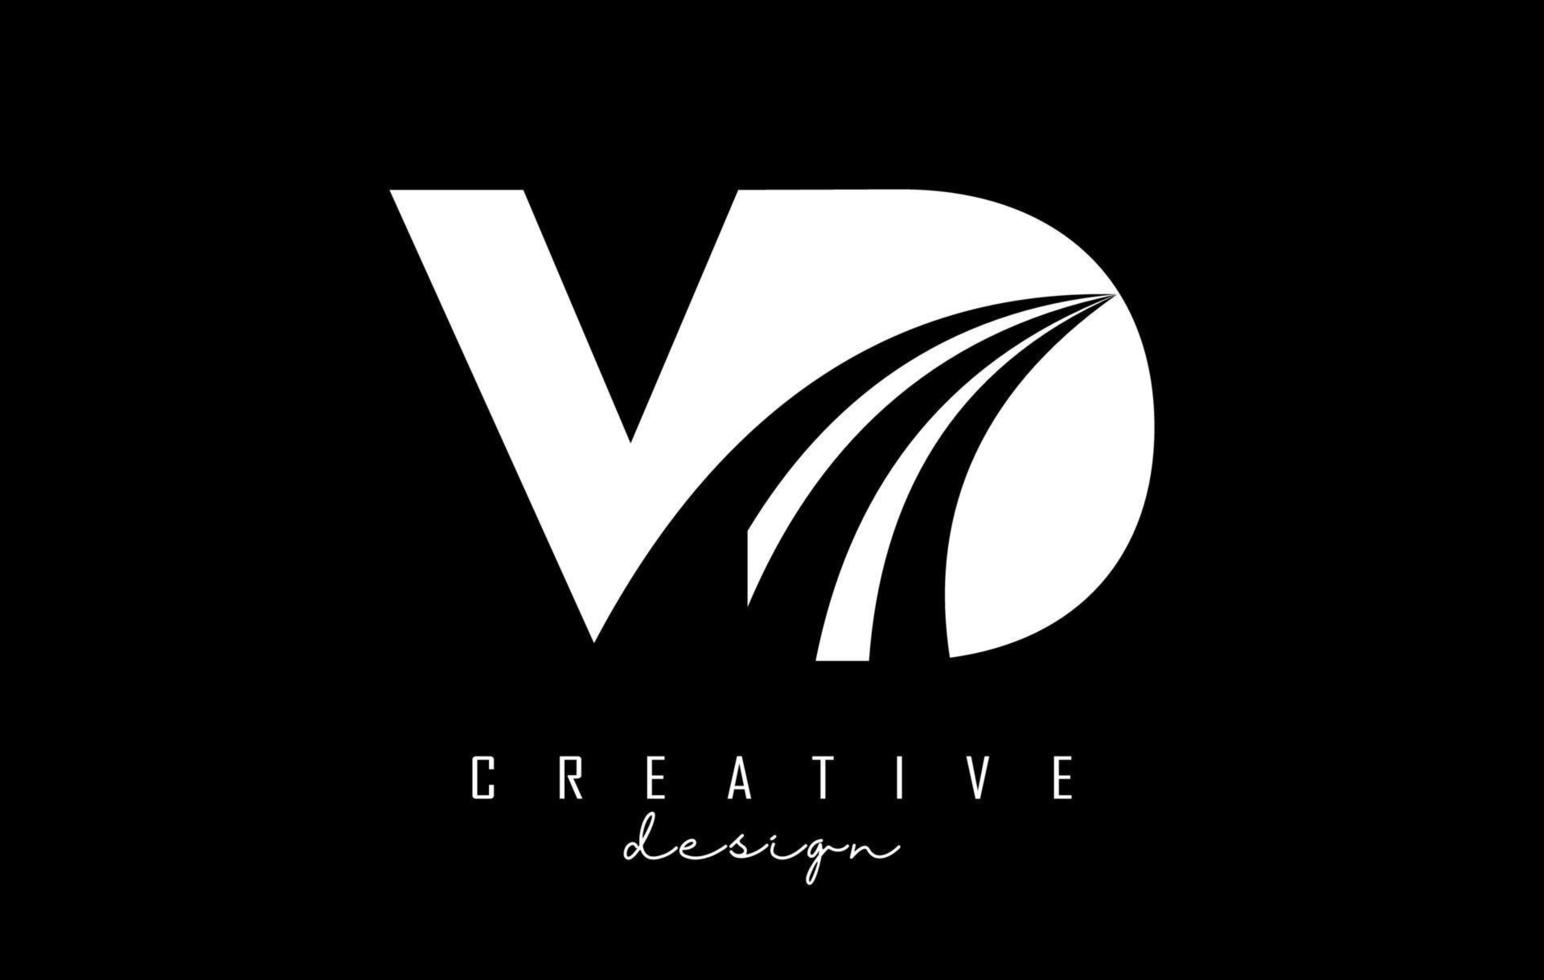 kreative weiße buchstaben vd vd-logo mit führenden linien und straßenkonzeptdesign. Buchstaben mit geometrischem Design. vektor